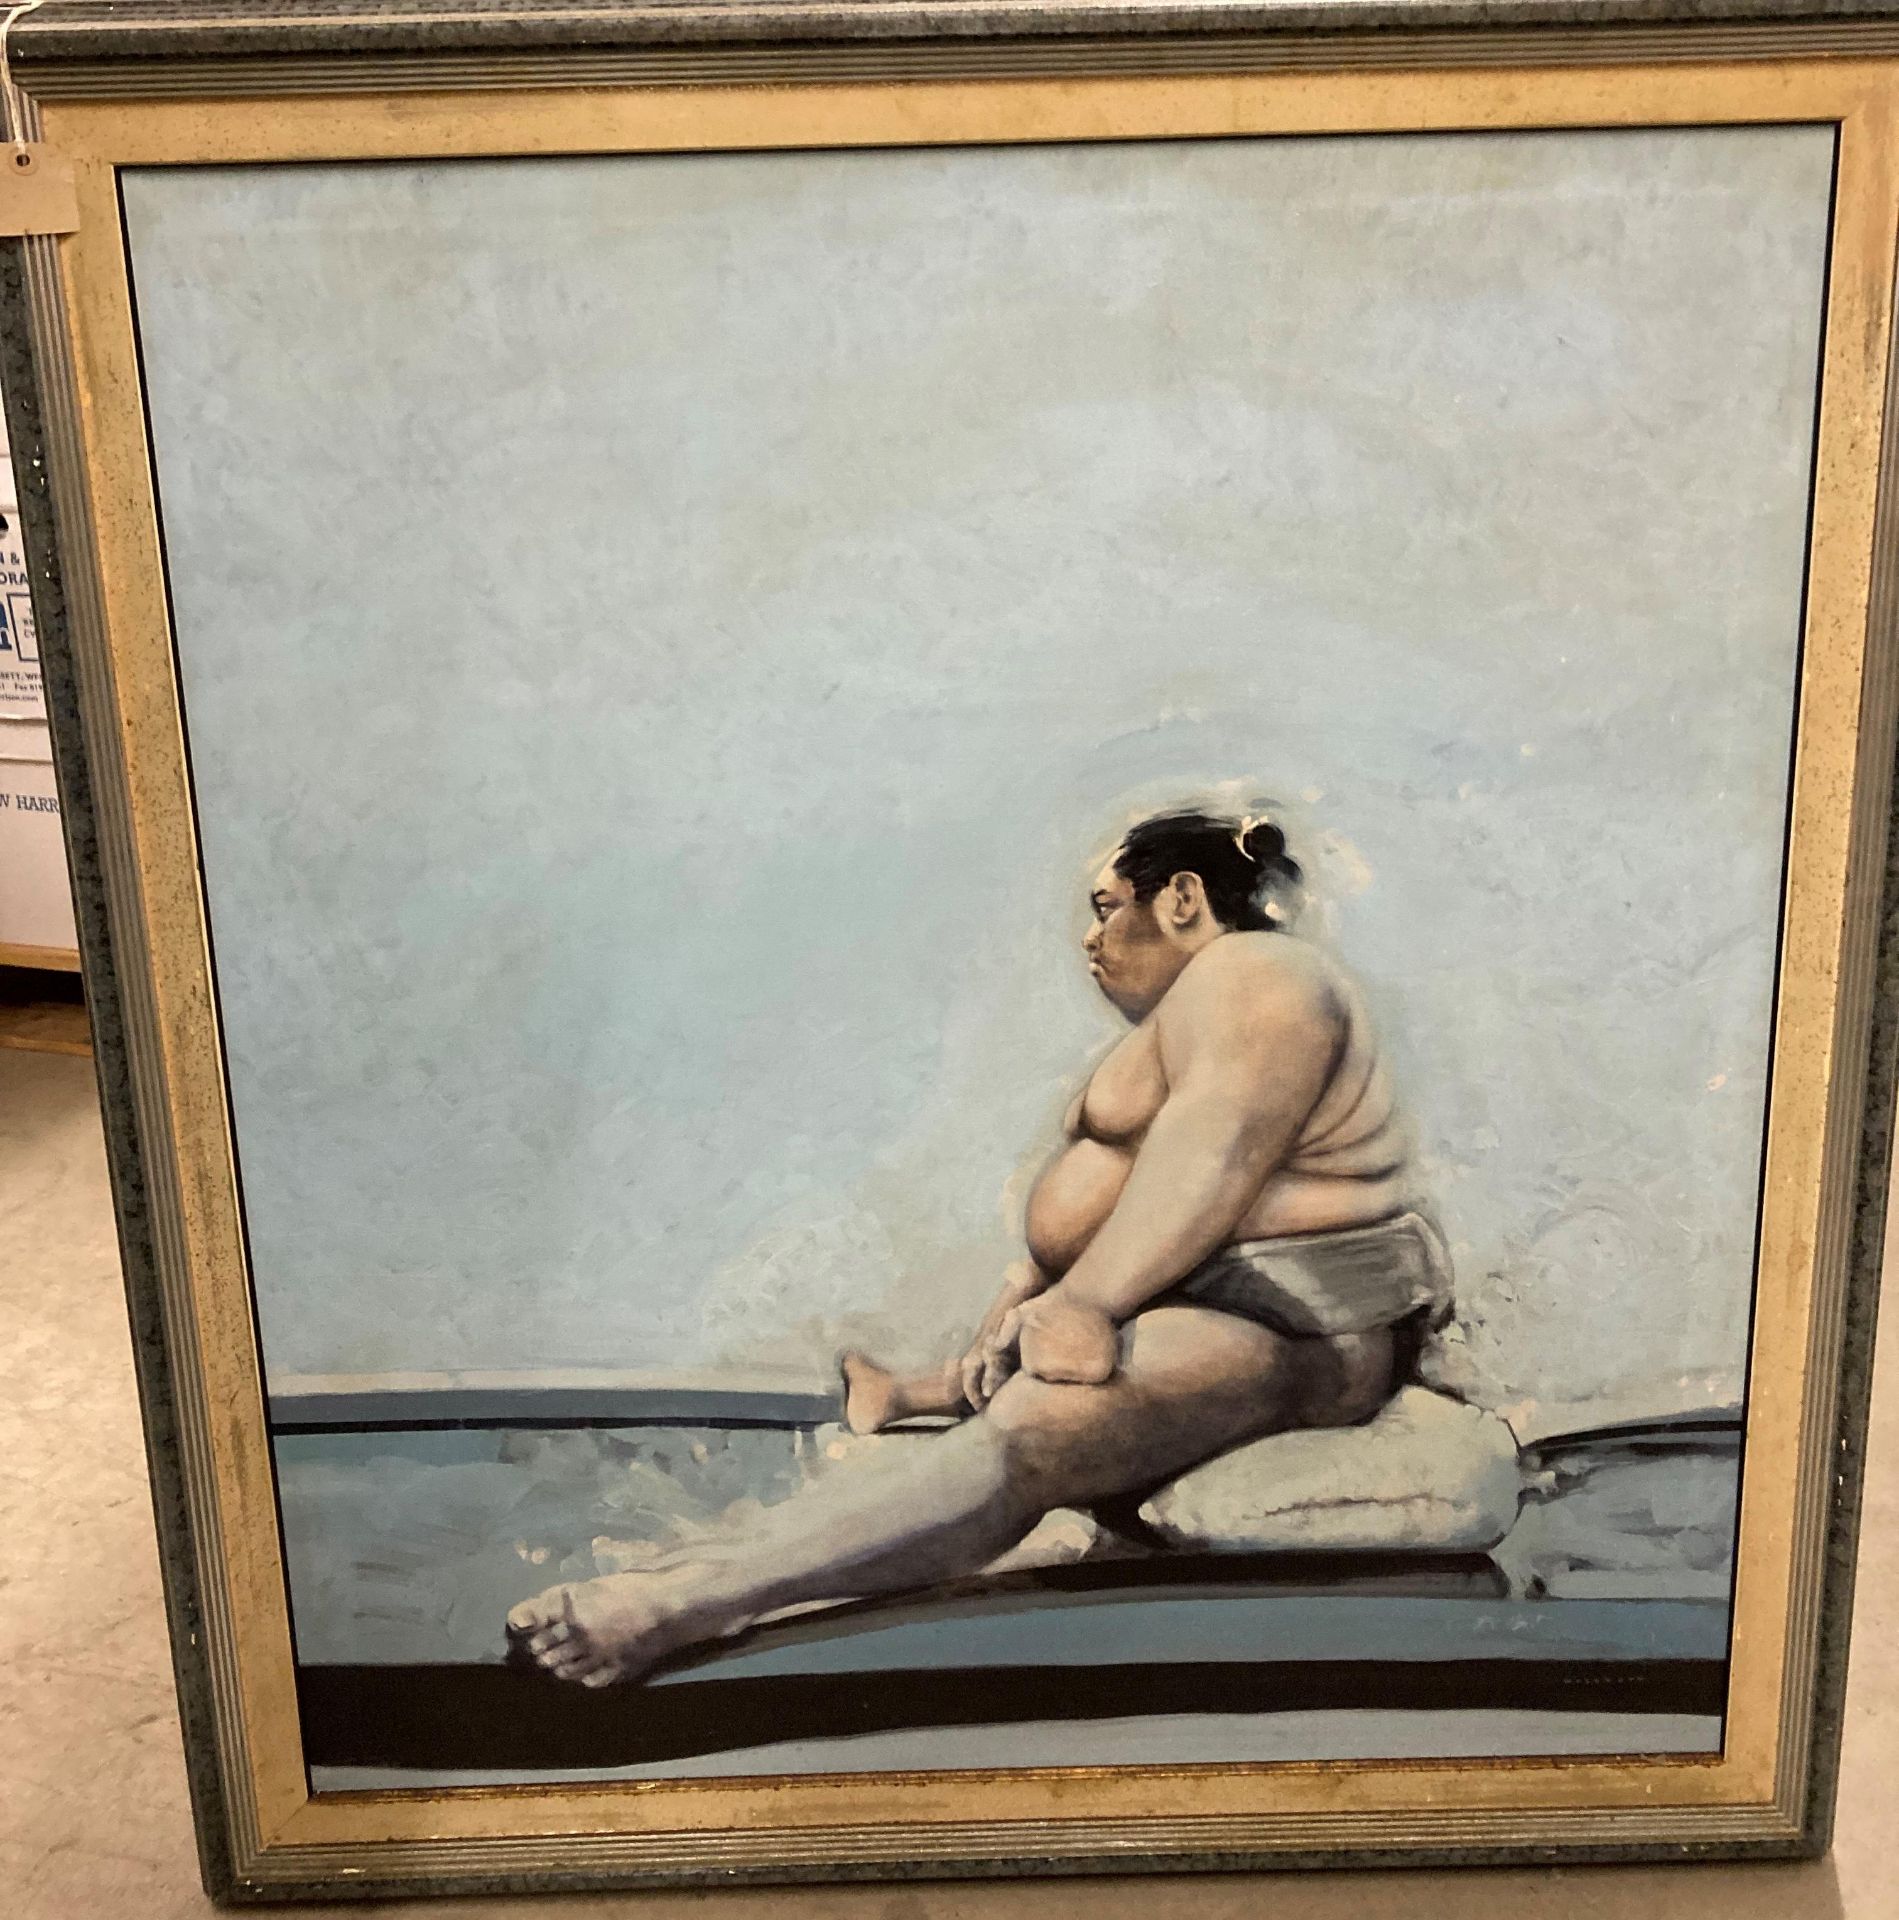 † Charles Willmott (1990) large framed oil on canvas 'Study of Sumo Wrestlers - Konishki' (The Dump